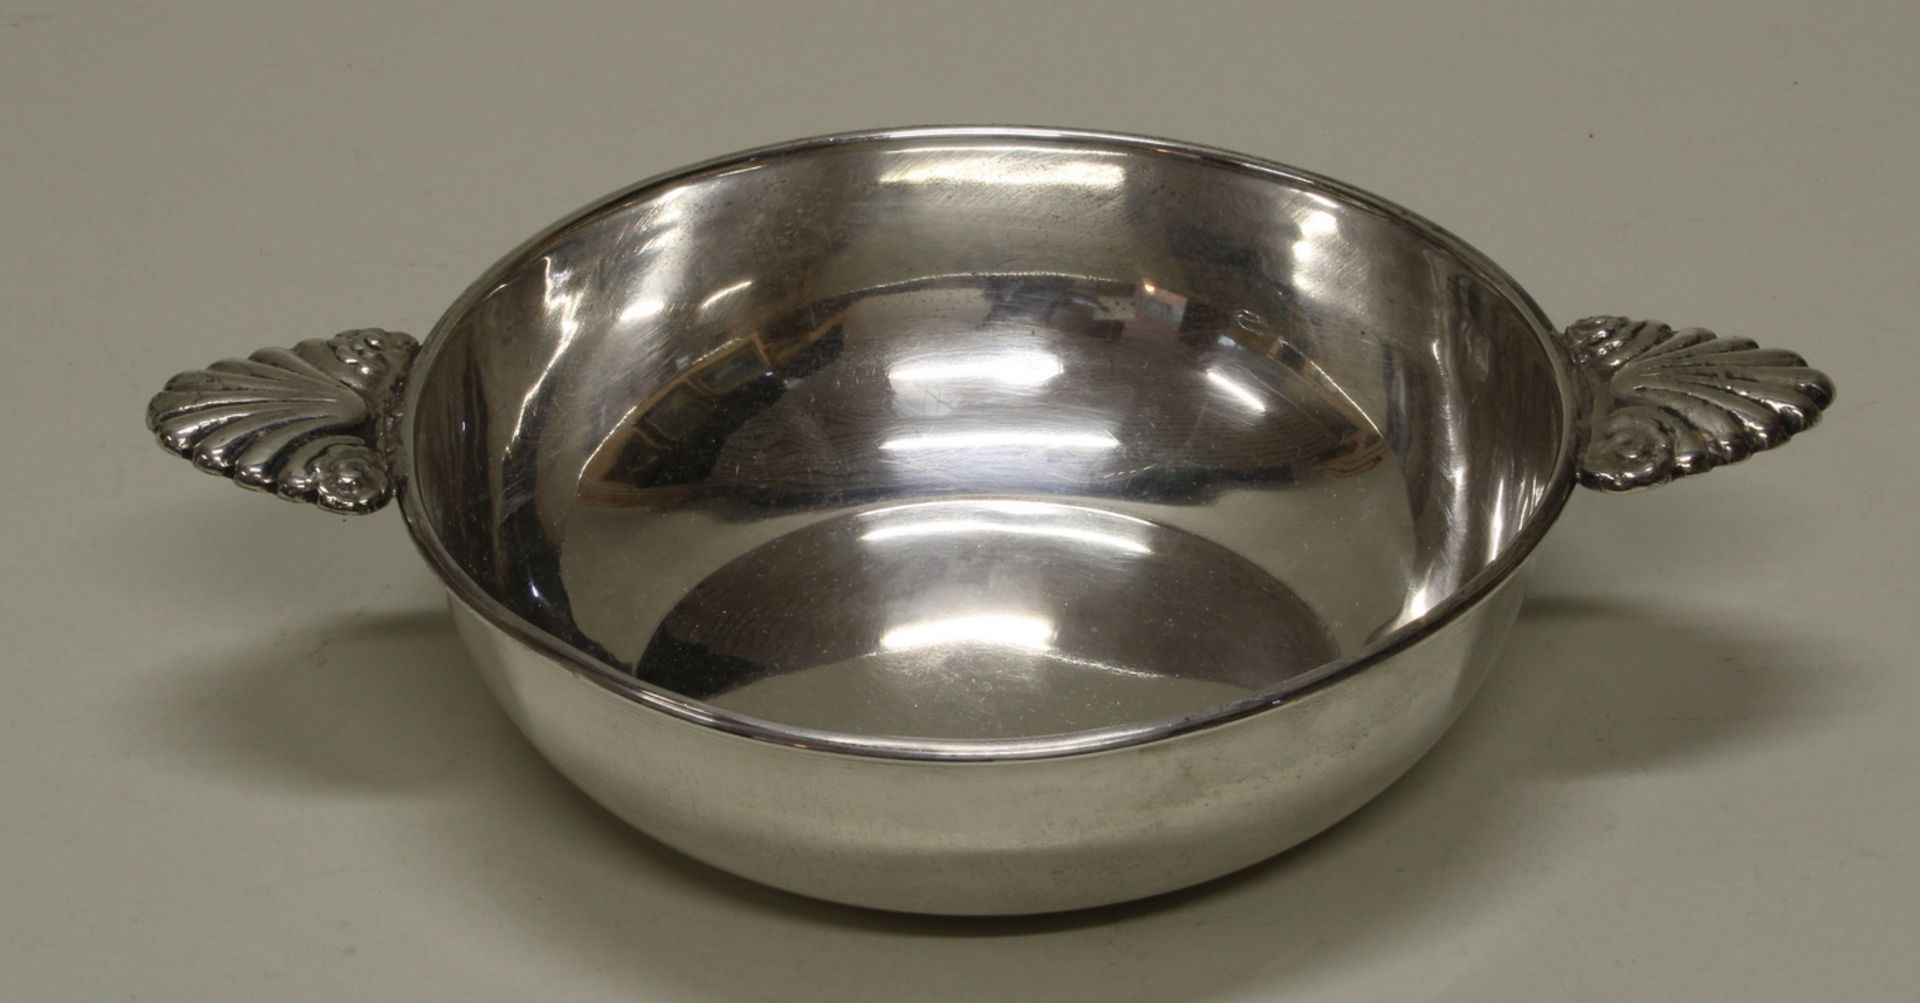 Schale, Silber 900, rund, Handhaben in Palmetten-Form, 5 x 25 x 18 cm, ca. 240 g, leicht gedellt